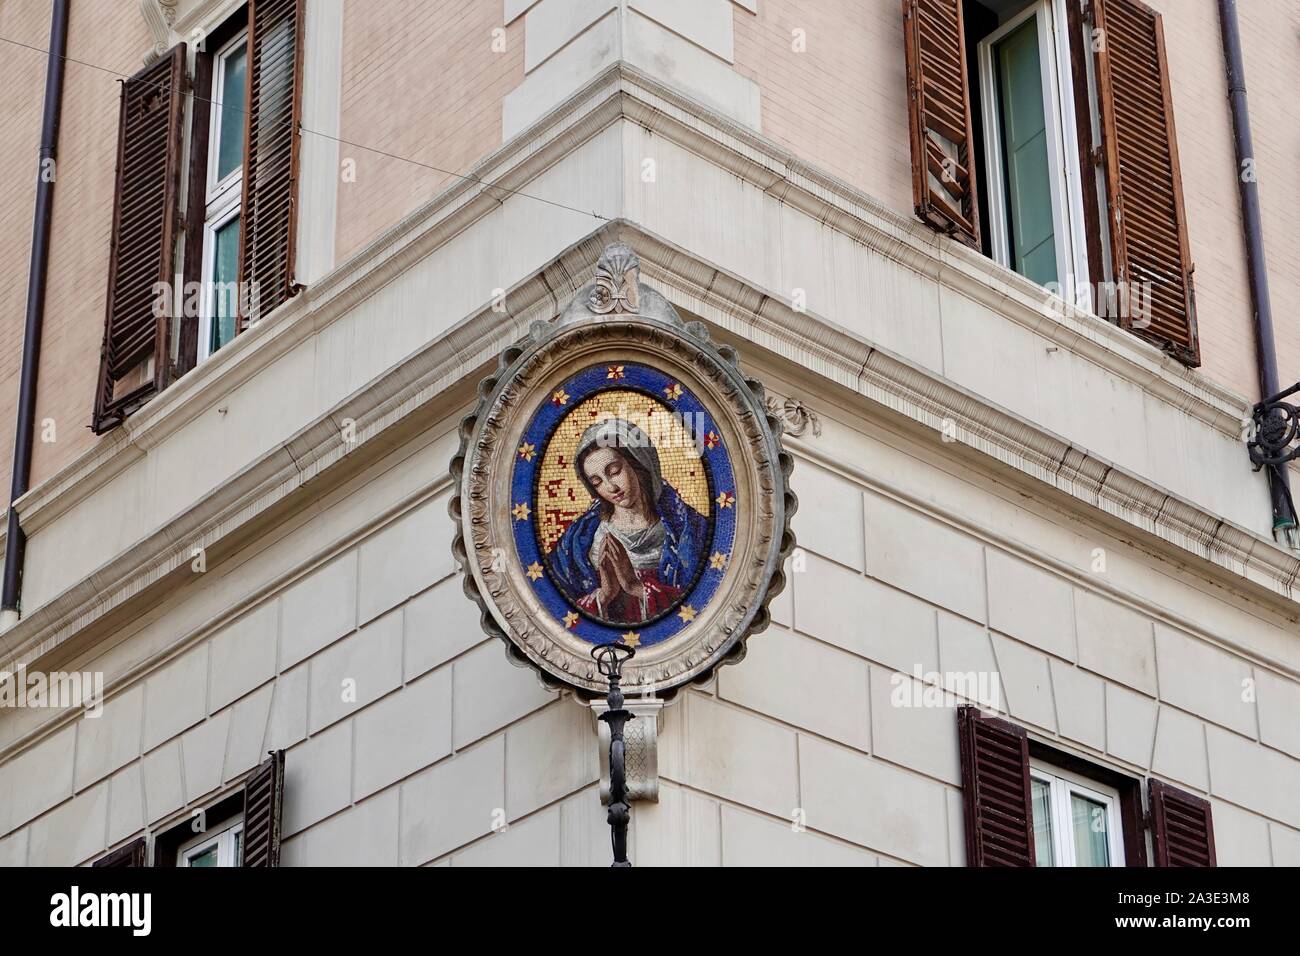 Madonnella, mosaico della Vergine Maria come protettrice, madre di Dio, all'angolo di un edificio ai margini di Piazza campo De Fiori, Roma, Italia. Foto Stock